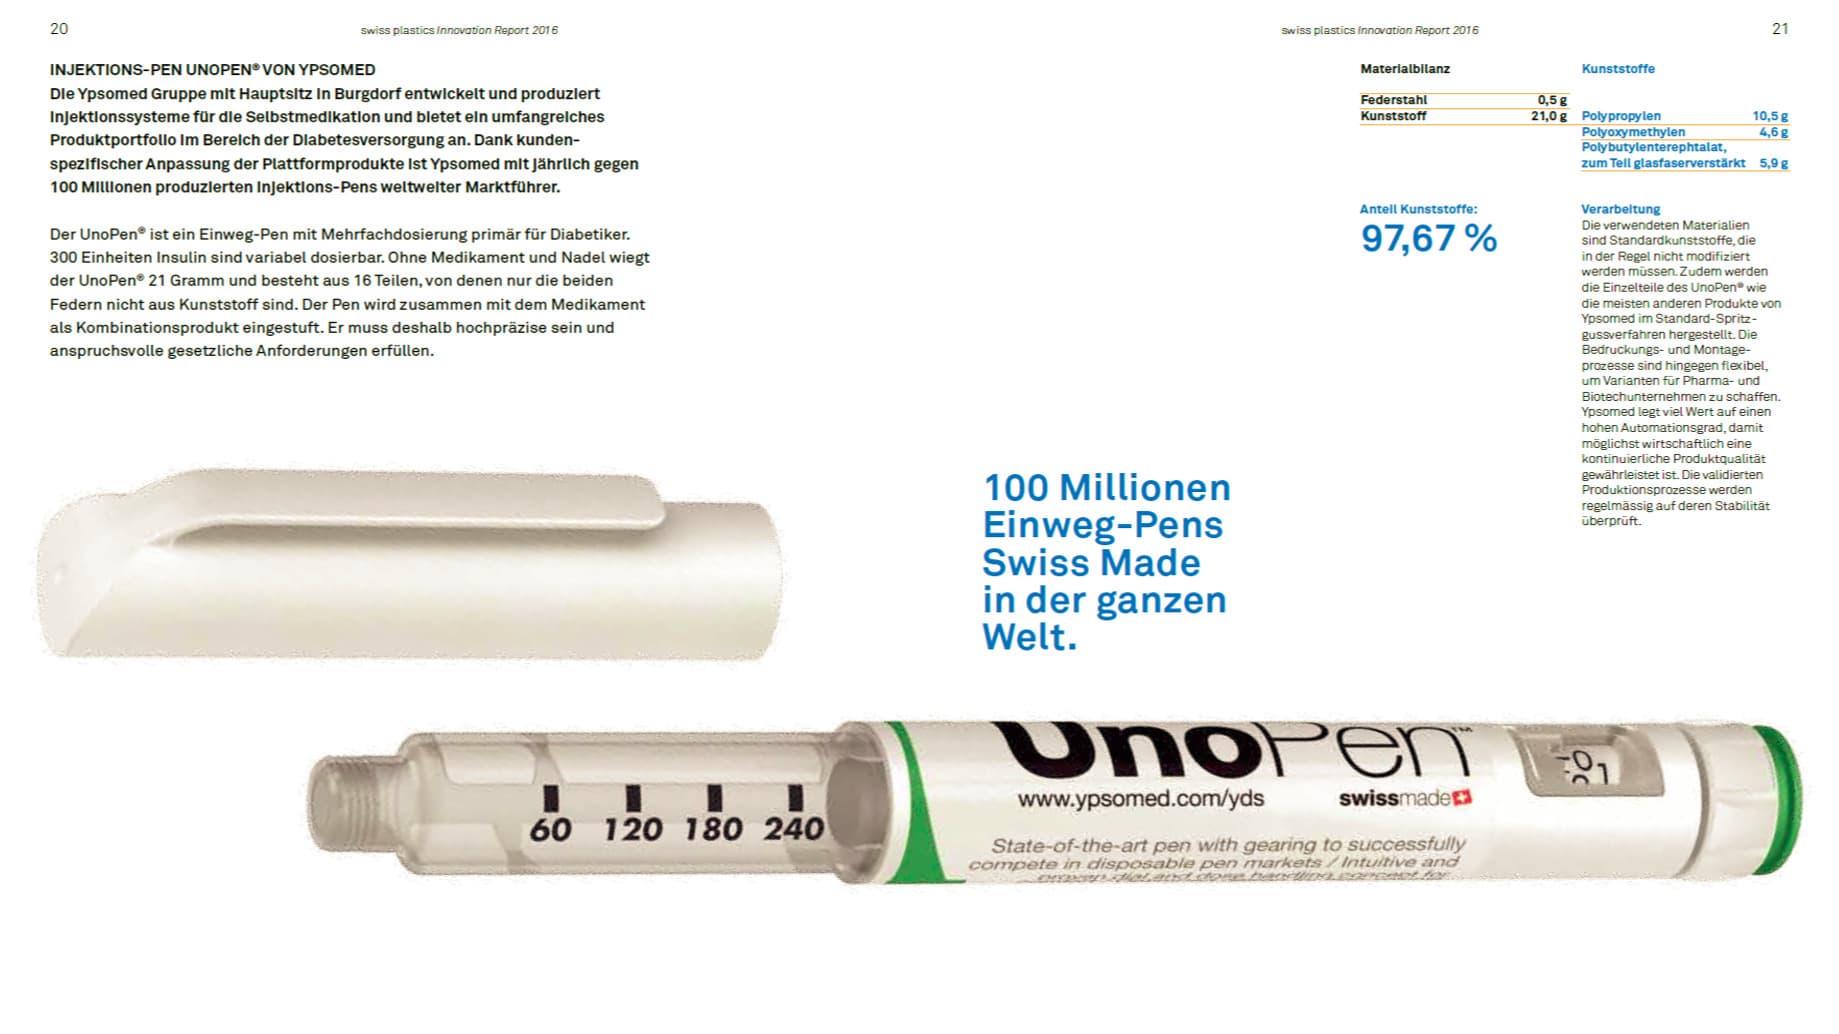 100 Millionen Injections-Pen UNOPEN von Ypsomed bestehen aus 97.67% Kunststoff